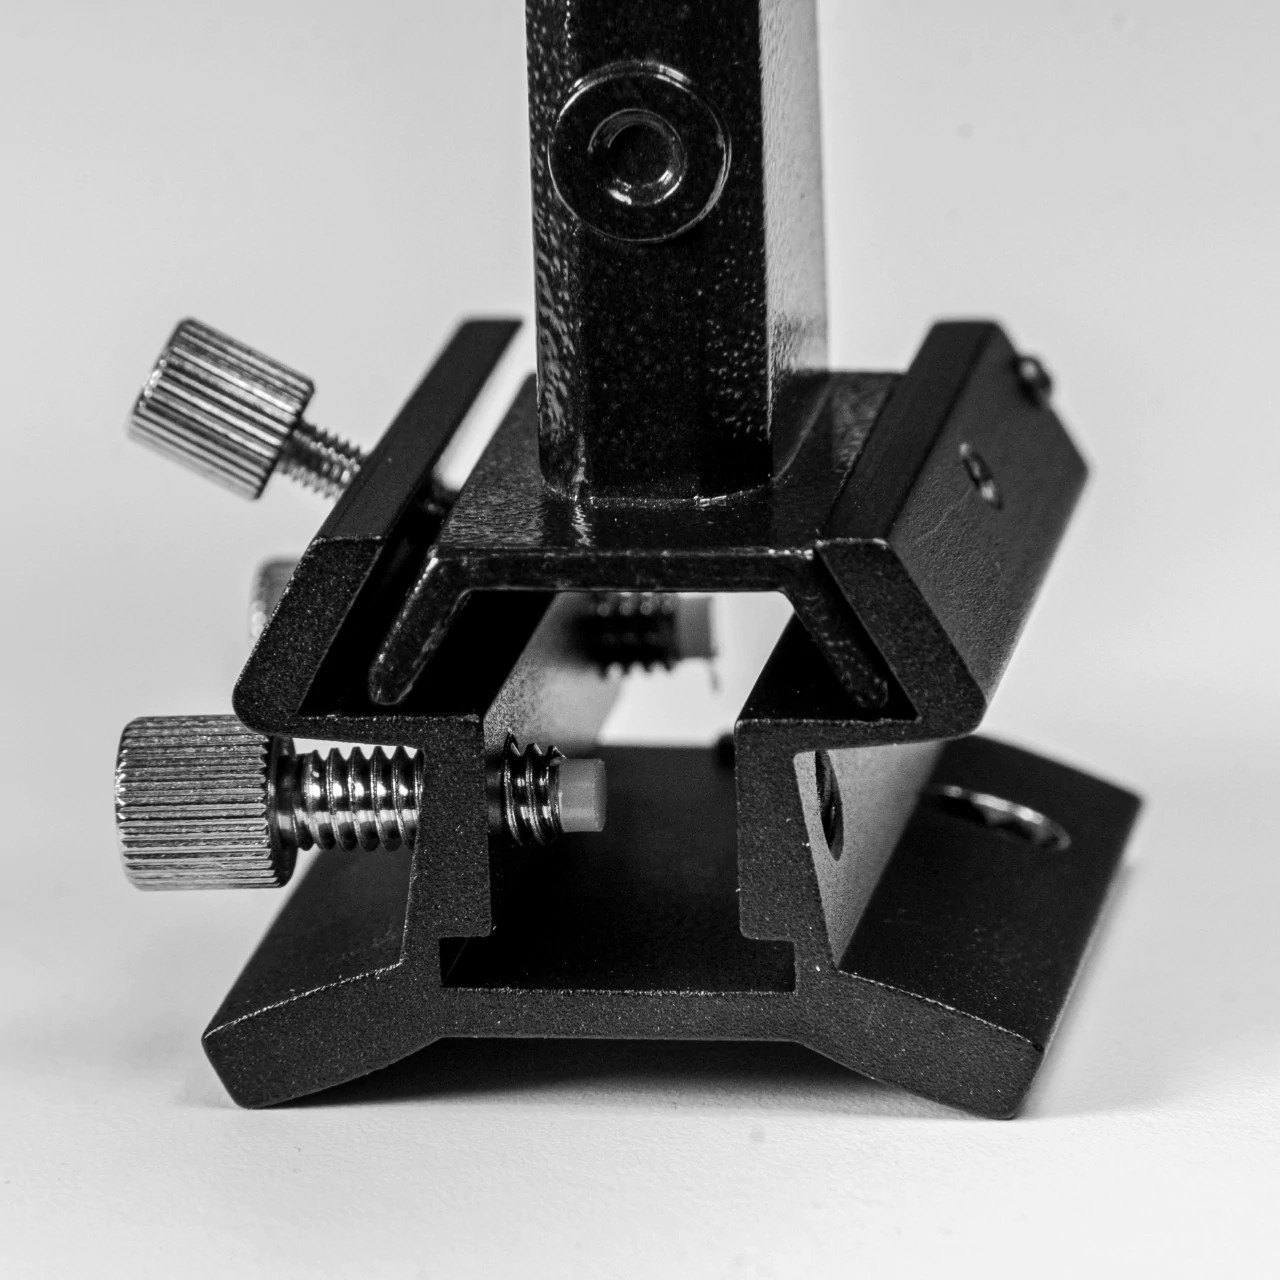 EXPLORE SCIENTIFIC supporto per cercatore ibrido per montaggio su tubo nero